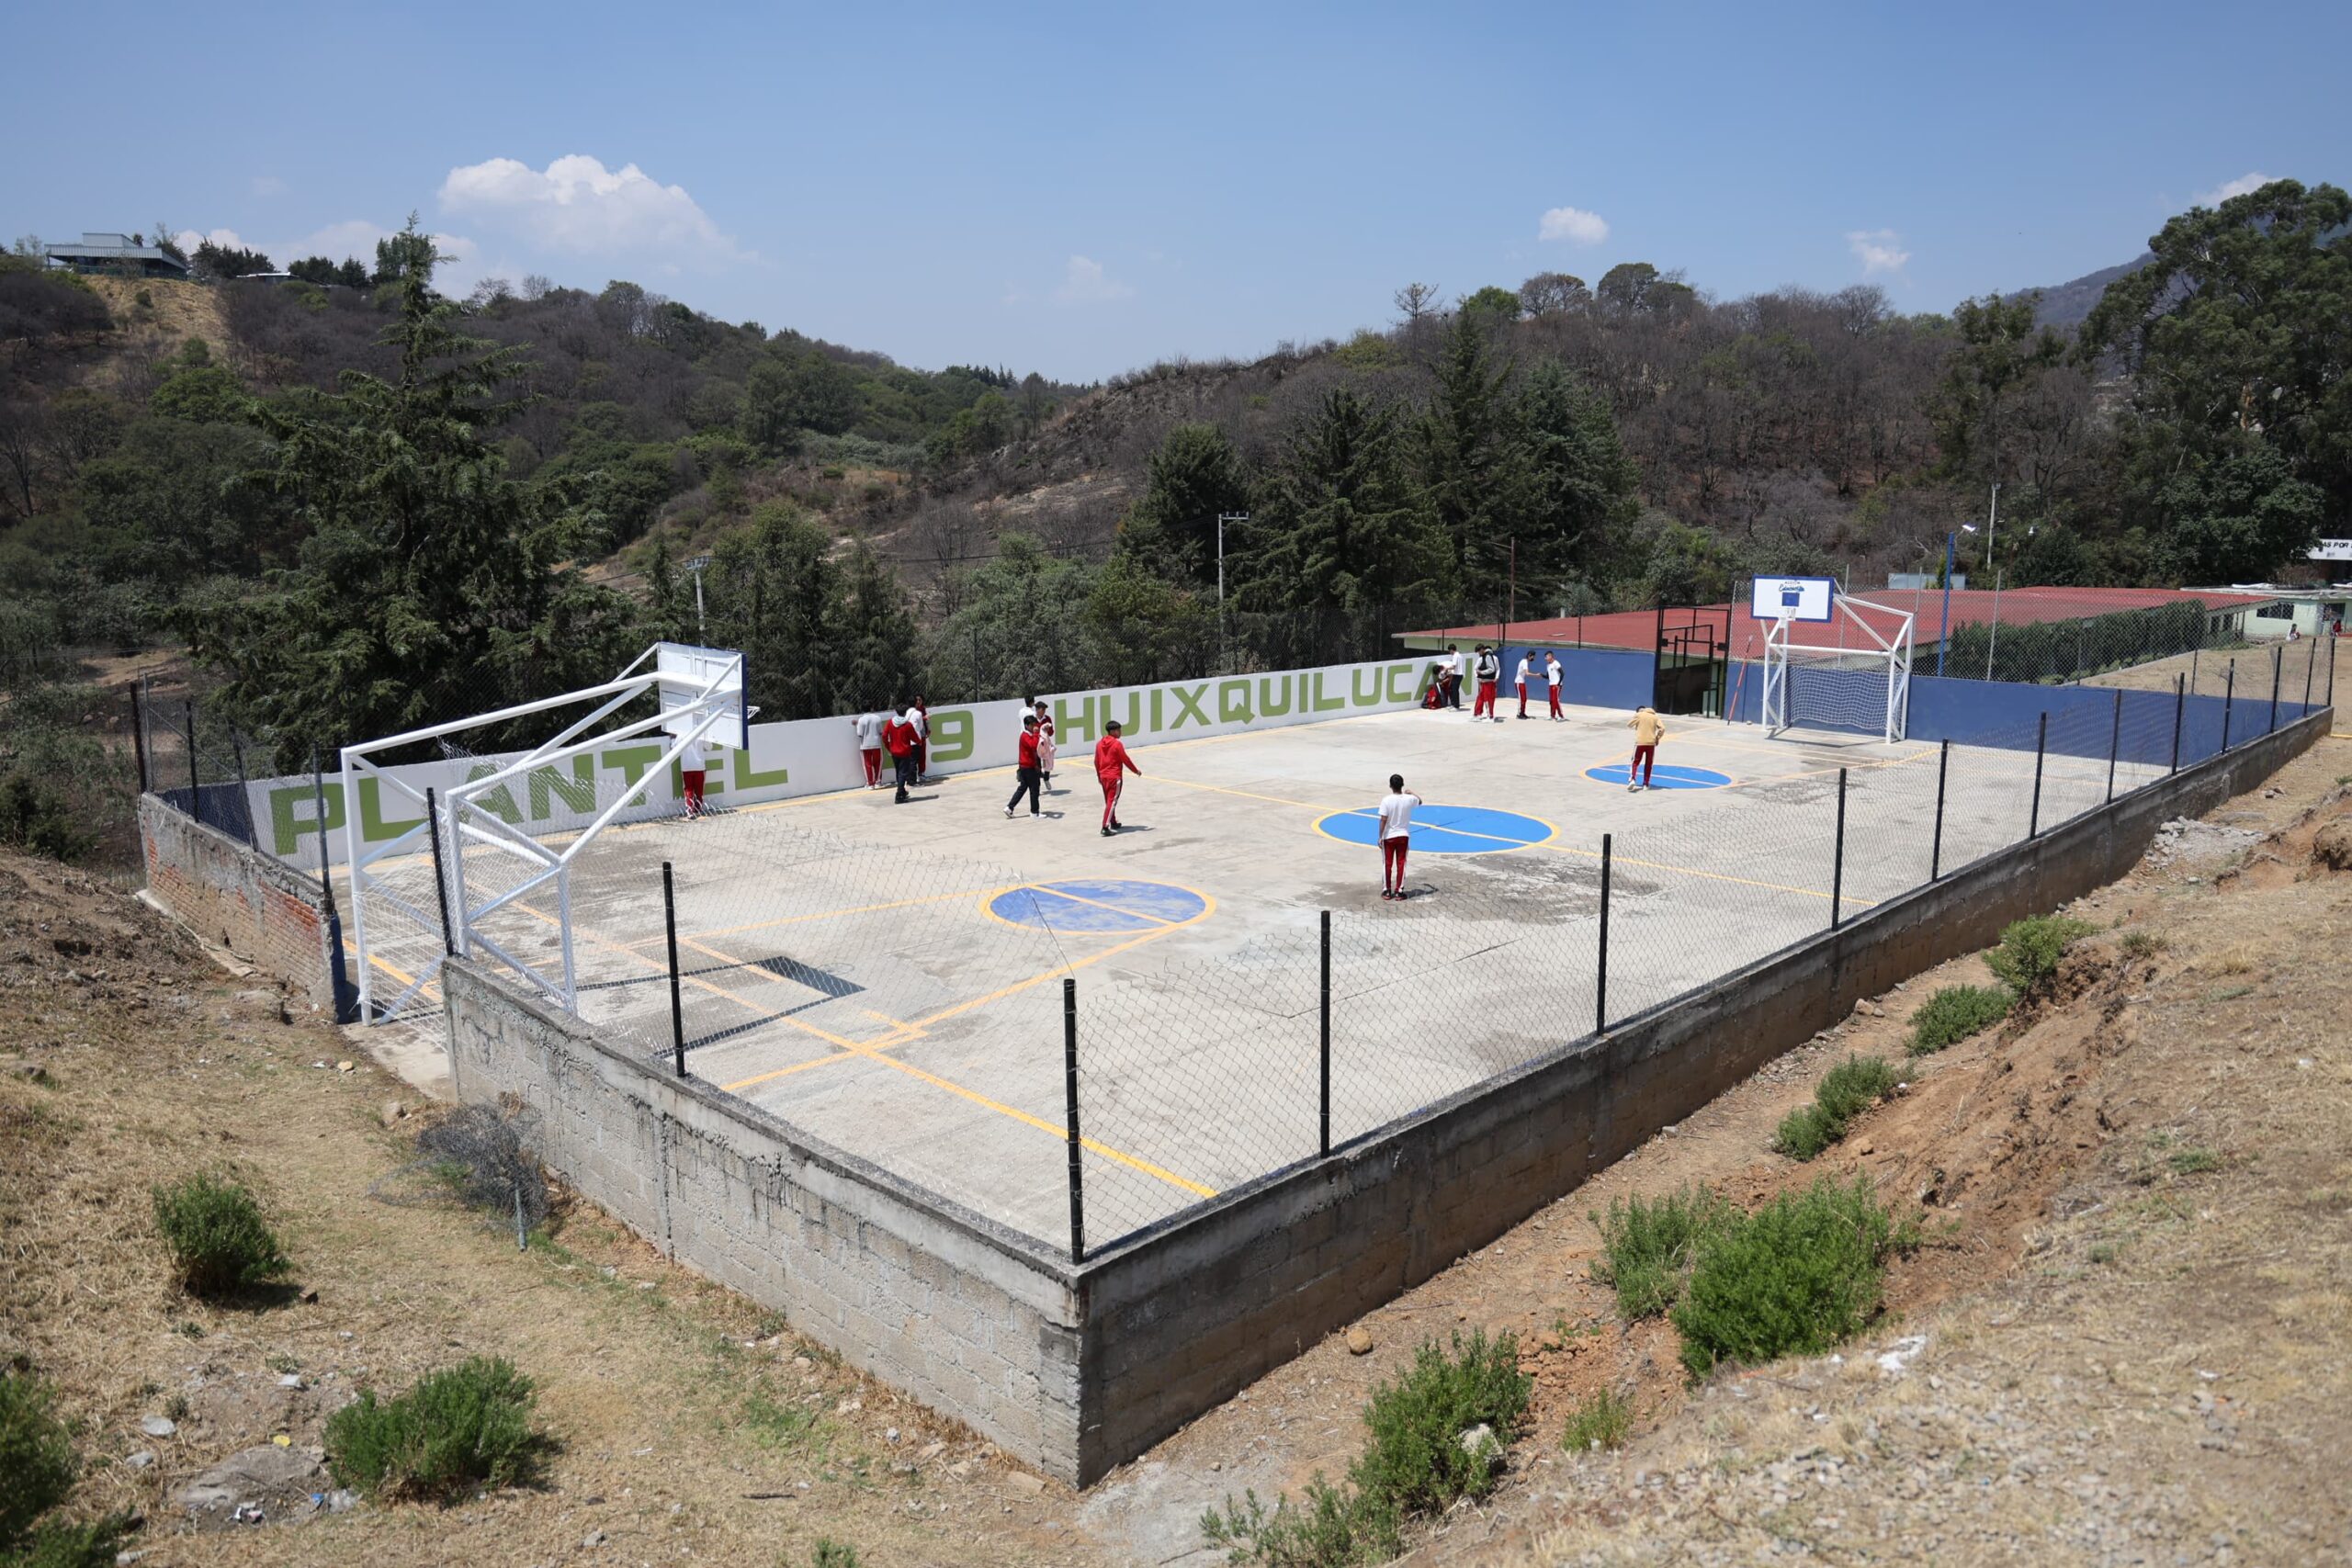 Cancha renovada para estudiantes de Bachilleres en Huixquilucan